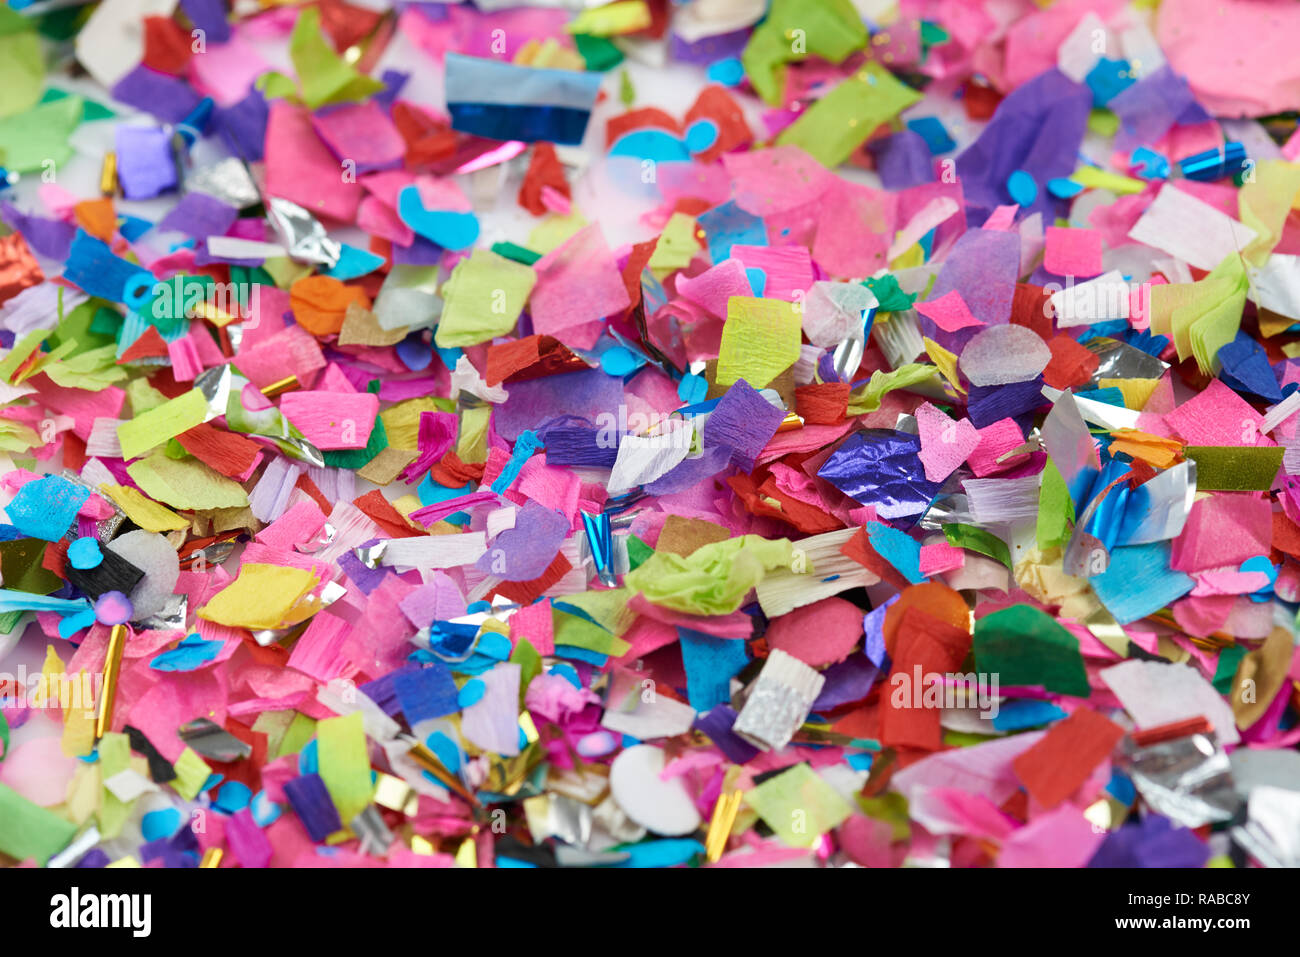 Selective focus on colorful confetti de morceaux de papier Banque D'Images